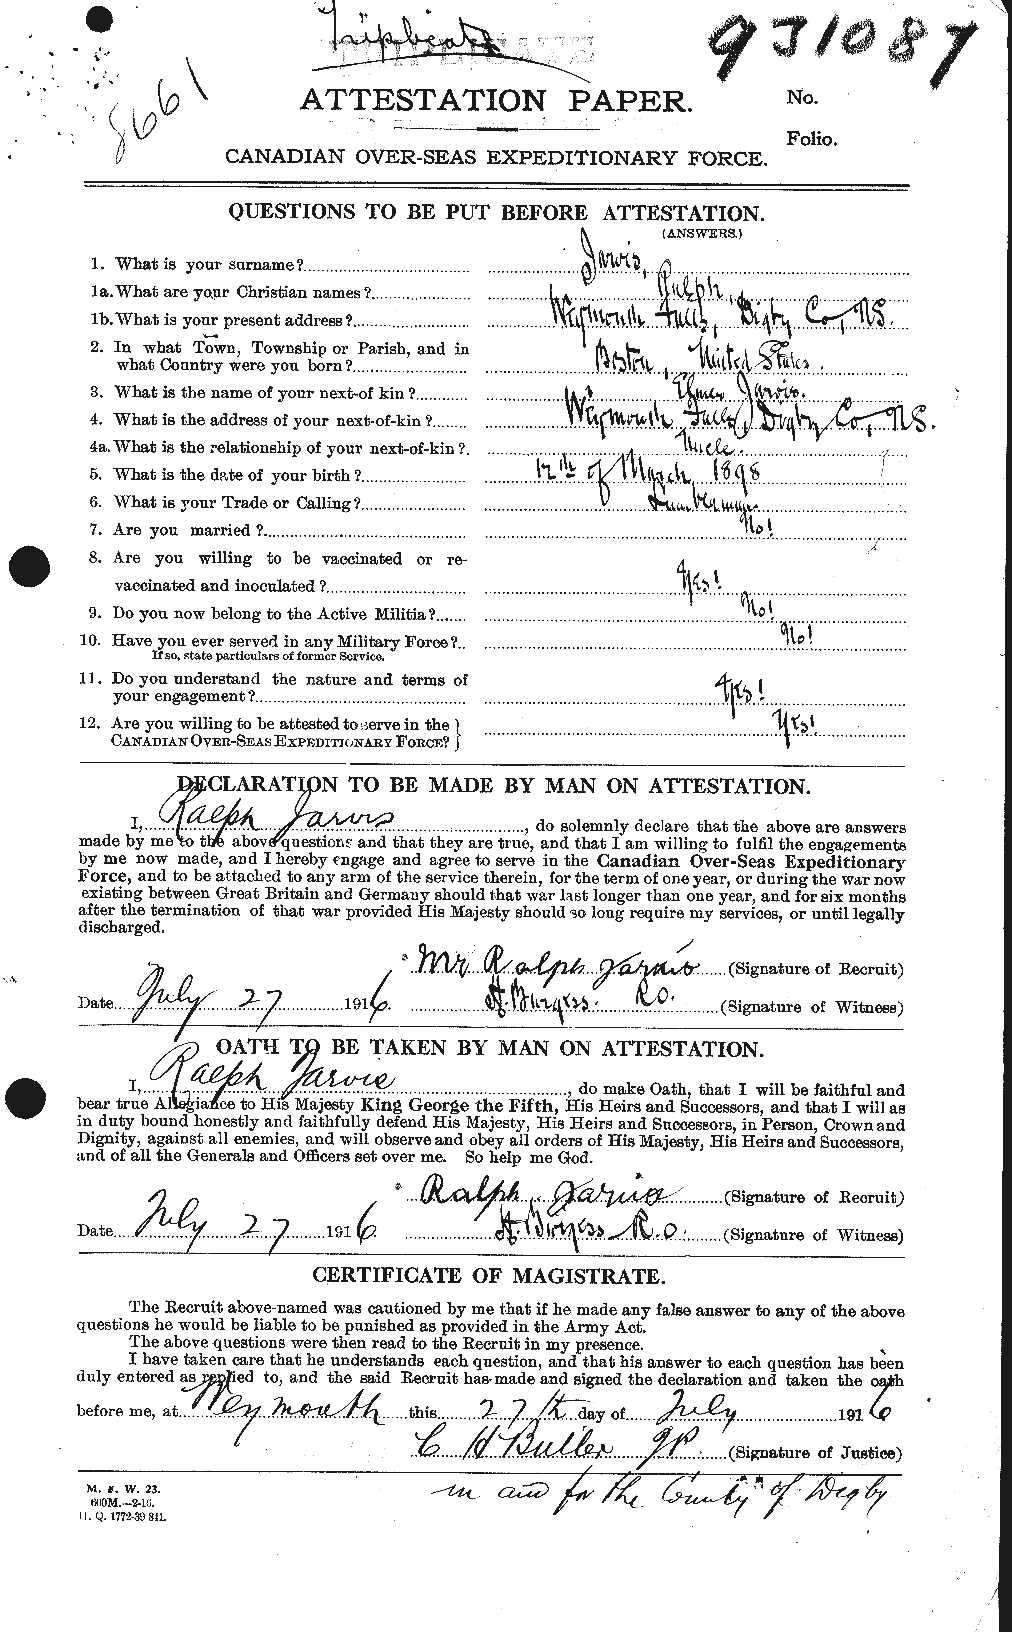 Dossiers du Personnel de la Première Guerre mondiale - CEC 415844a